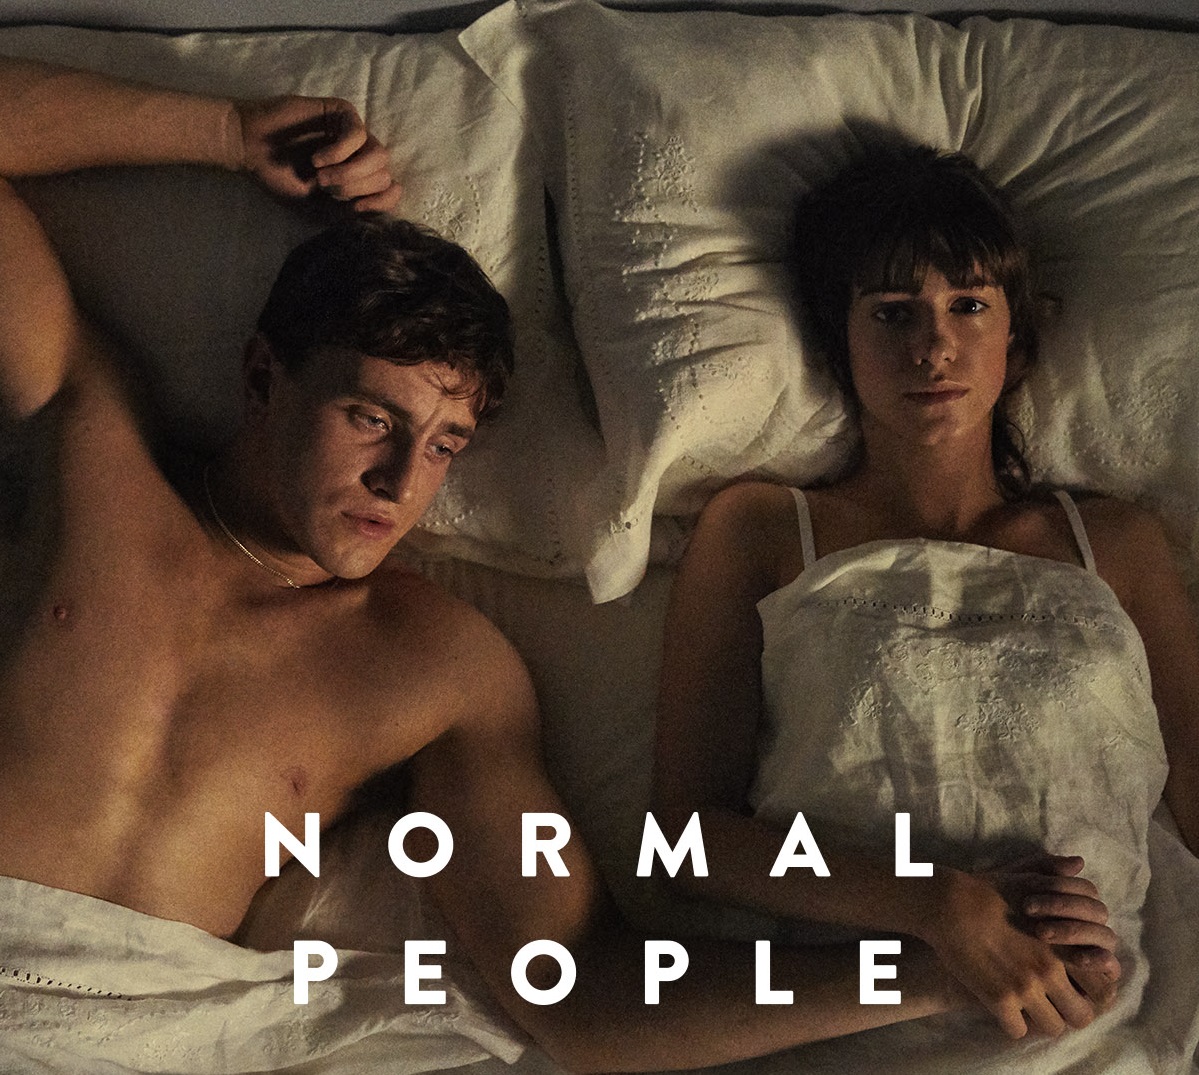  Daisy Edgar-Jones y Paul Mezcal, protagonistas de “Normal People”: “Es una historia honesta, humana y complicada”